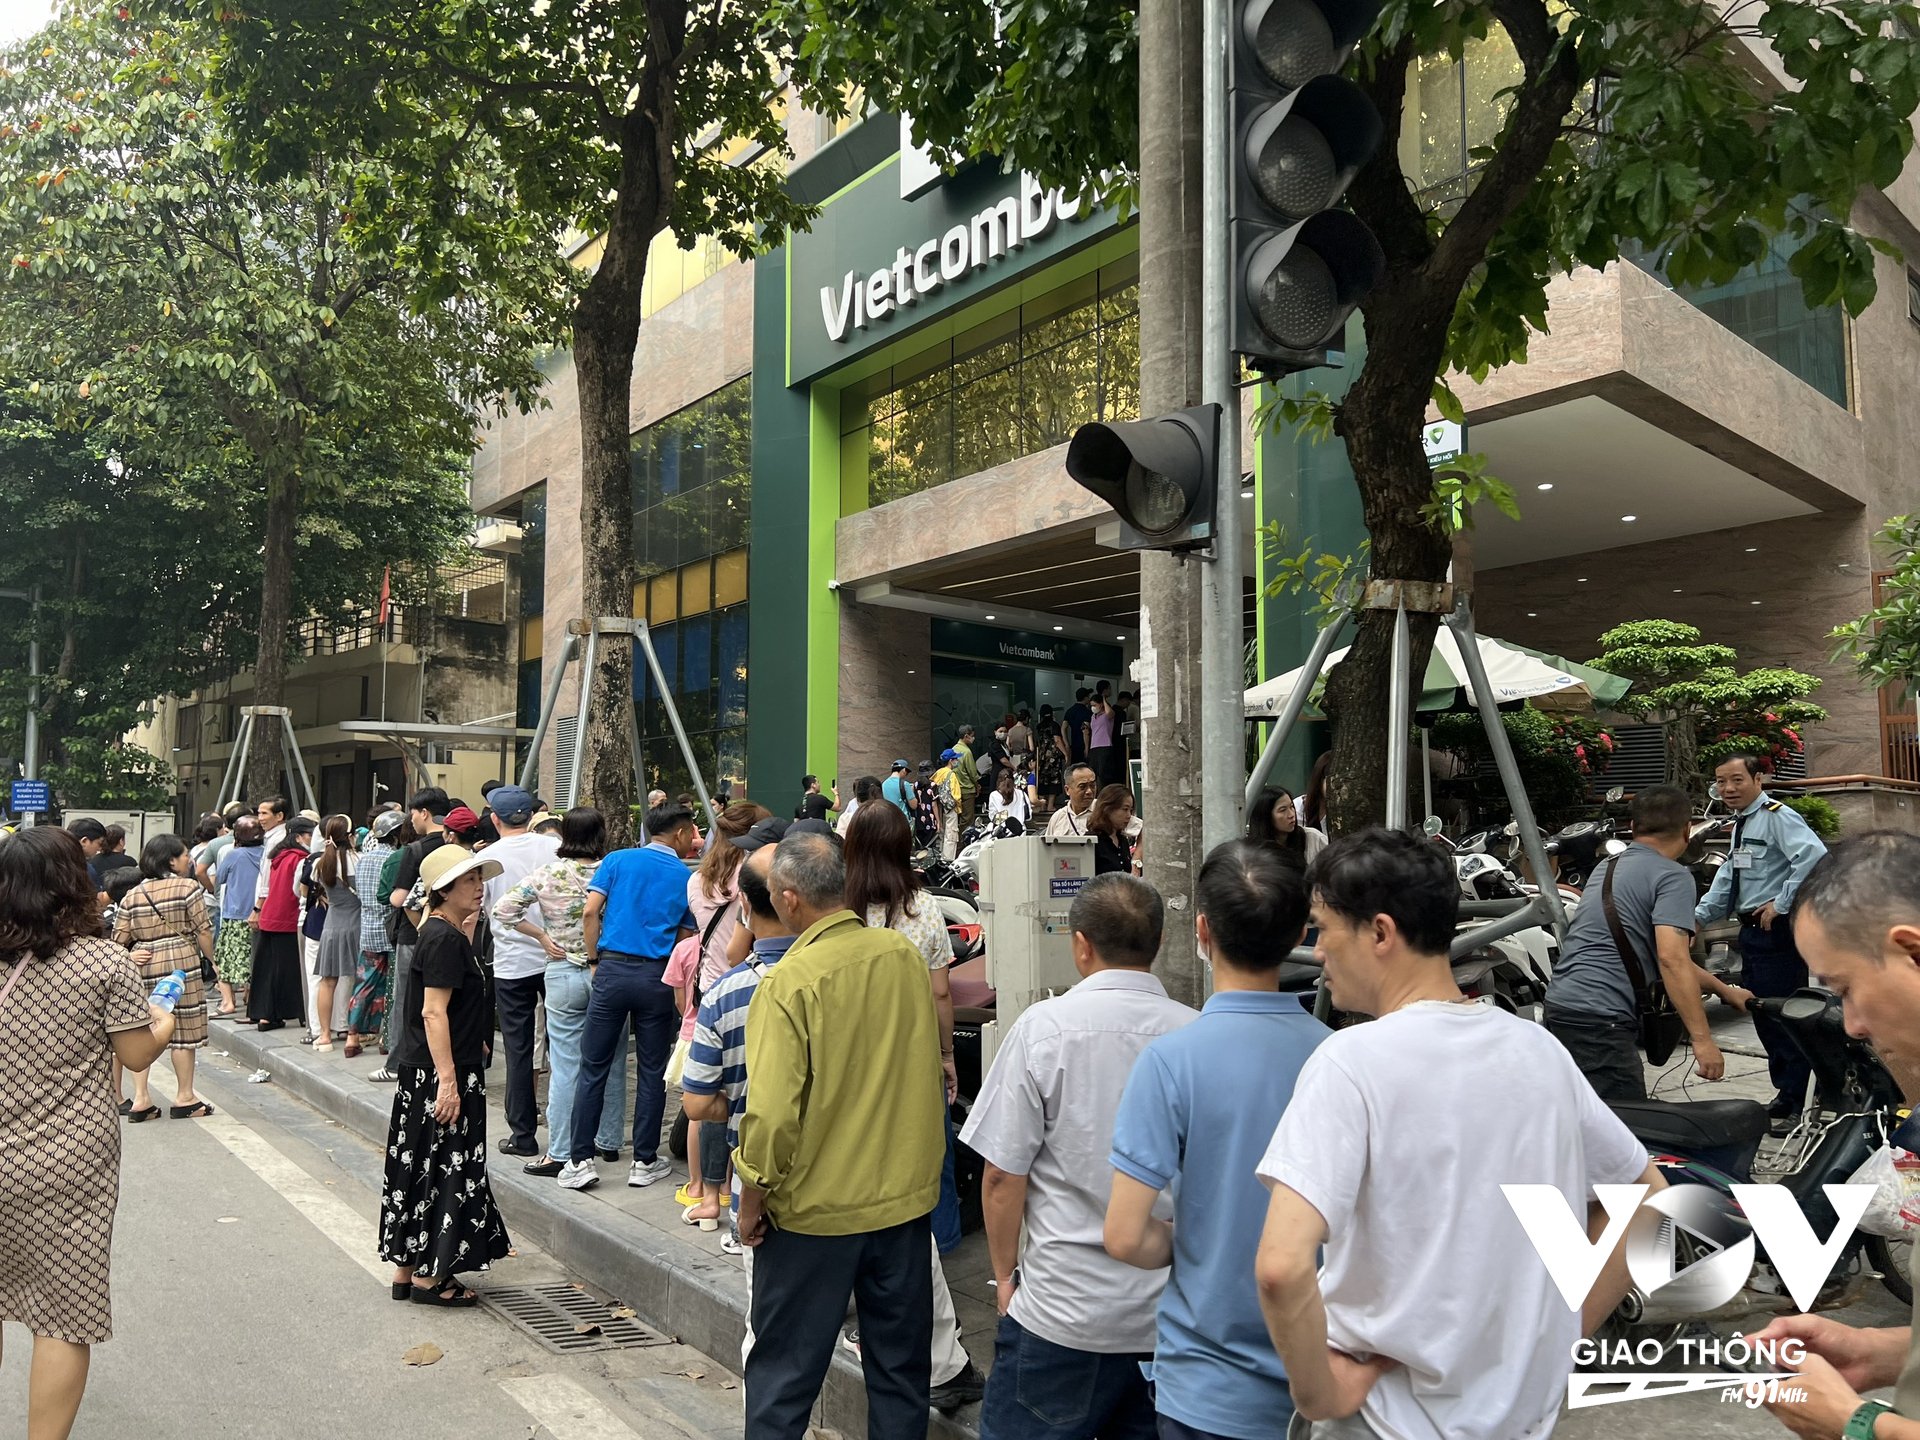 Tại Vietcombank chi nhánh Láng Hạ, cảnh tượng cũng không khác là bao khi người xếp hàng mua vàng kéo dài ra tận ngoài đường